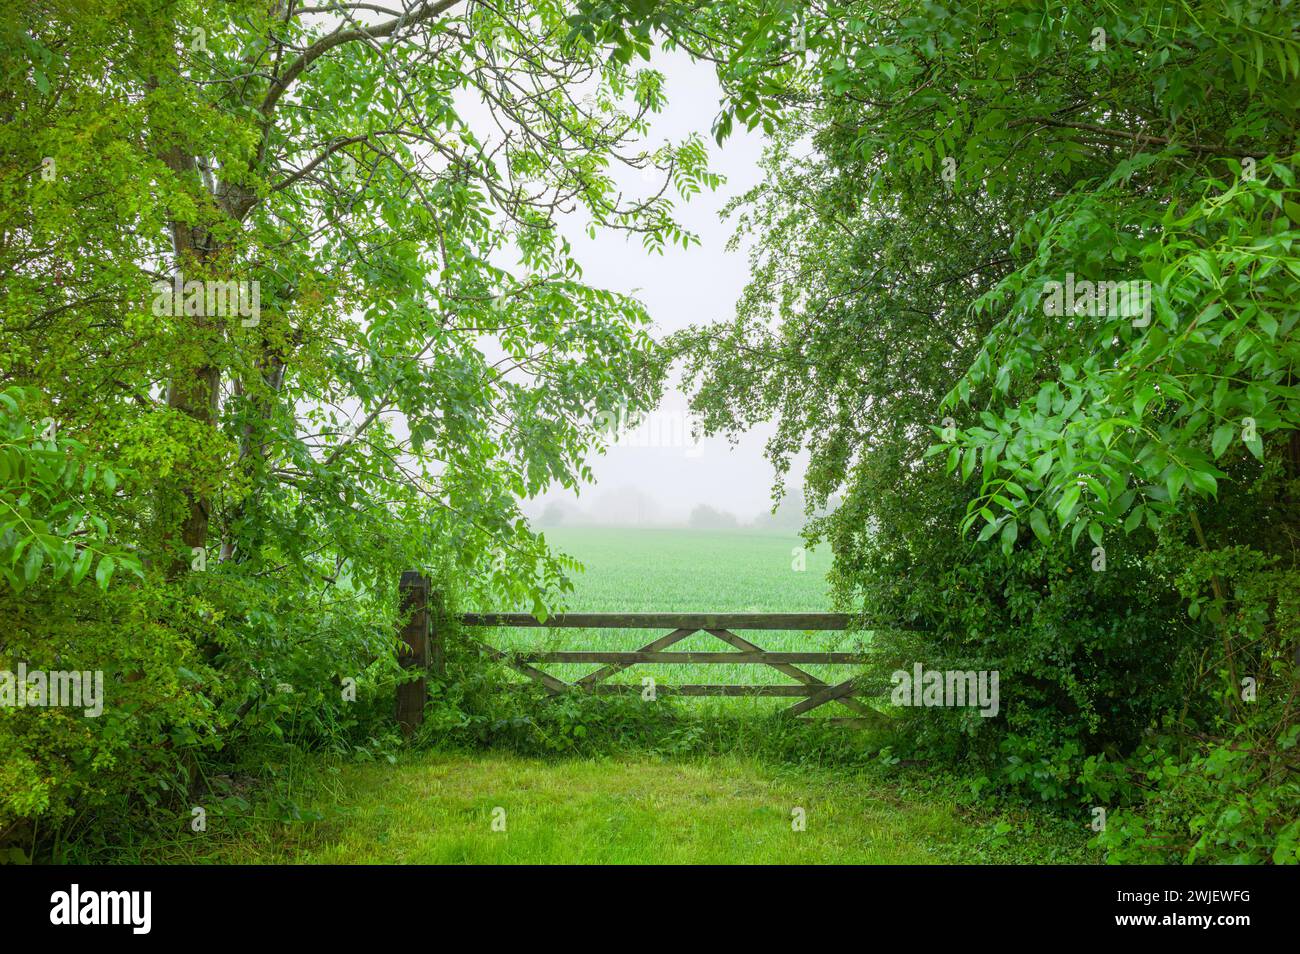 Beverley, Großbritannien - Blick auf ein hölzernes Farmtor, flankiert von Bäumen und grünem Laub, das zu Ackerland mit Ernte und nebeligem Morgenhimmel führt. Beverley, Großbritannien. Stockfoto